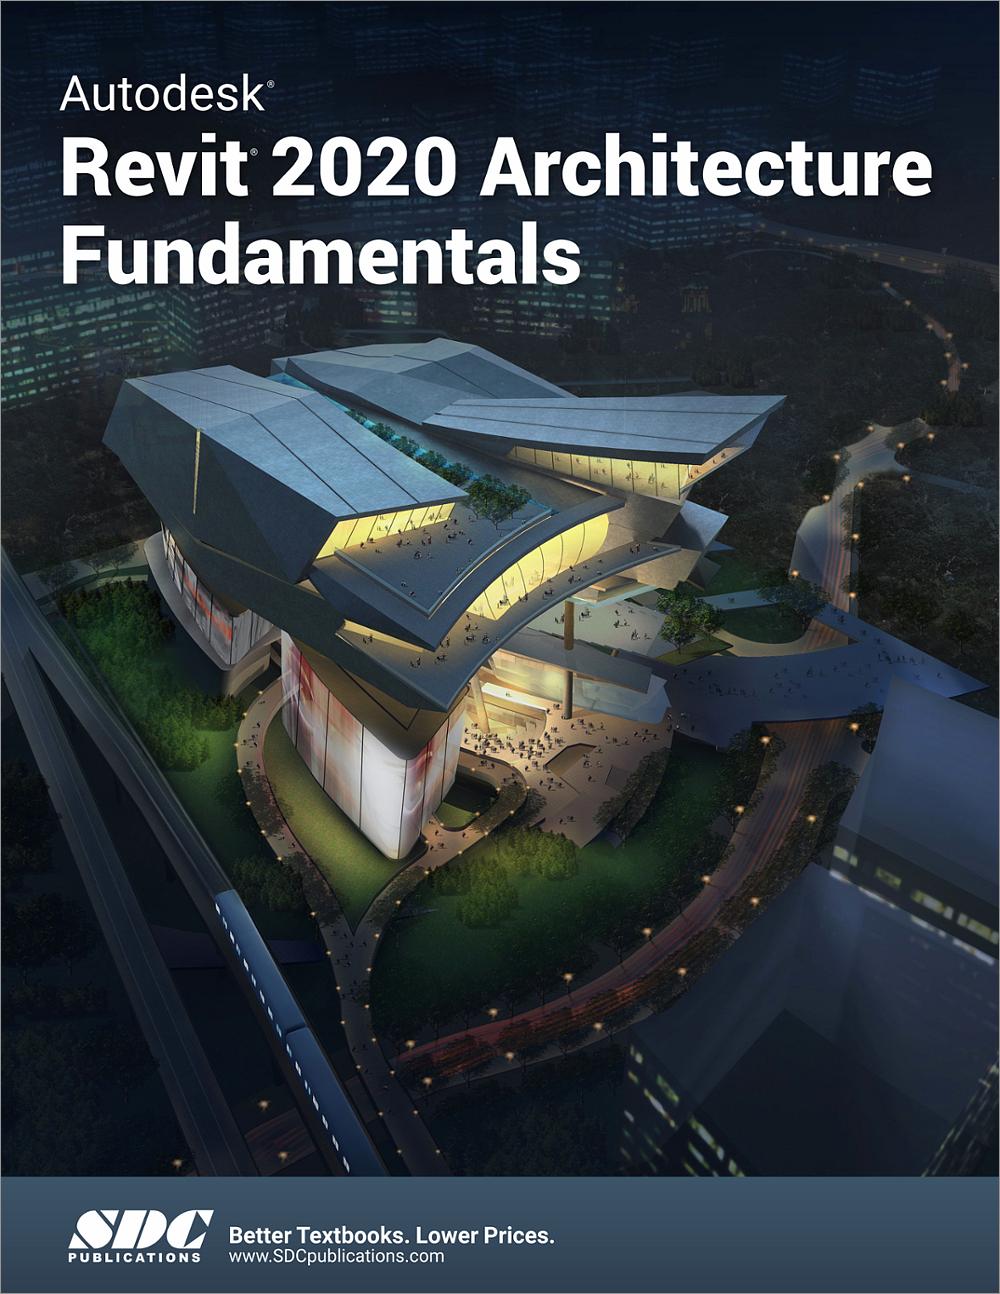 Autodesk Revit 2020 Architecture Fundamentals, Book 9781630572778 SDC Publications